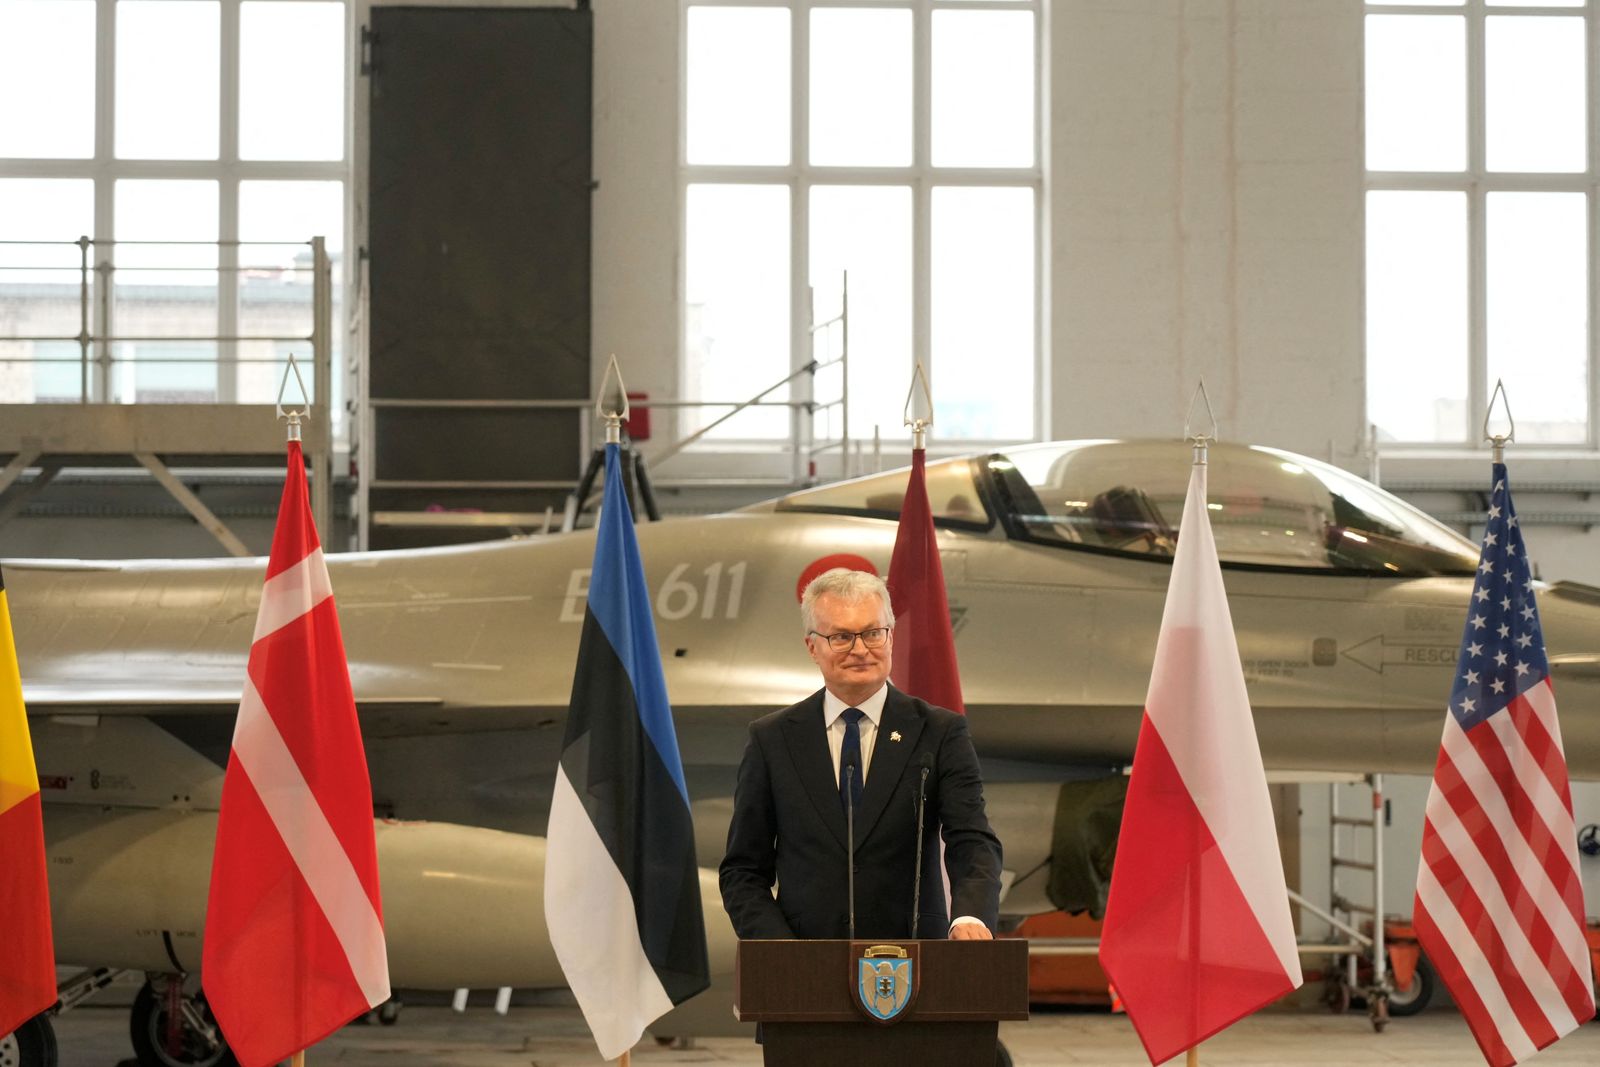 الرئيس الليتواني جيتاناس نوسيدا خلال استقبال مقاتلات القوات الجوية الملكية الدنماركية من طراز F-16  في قاعدة سياولياي الجوية العسكرية بليتوانيا - 28 يناير 2022 - REUTERS